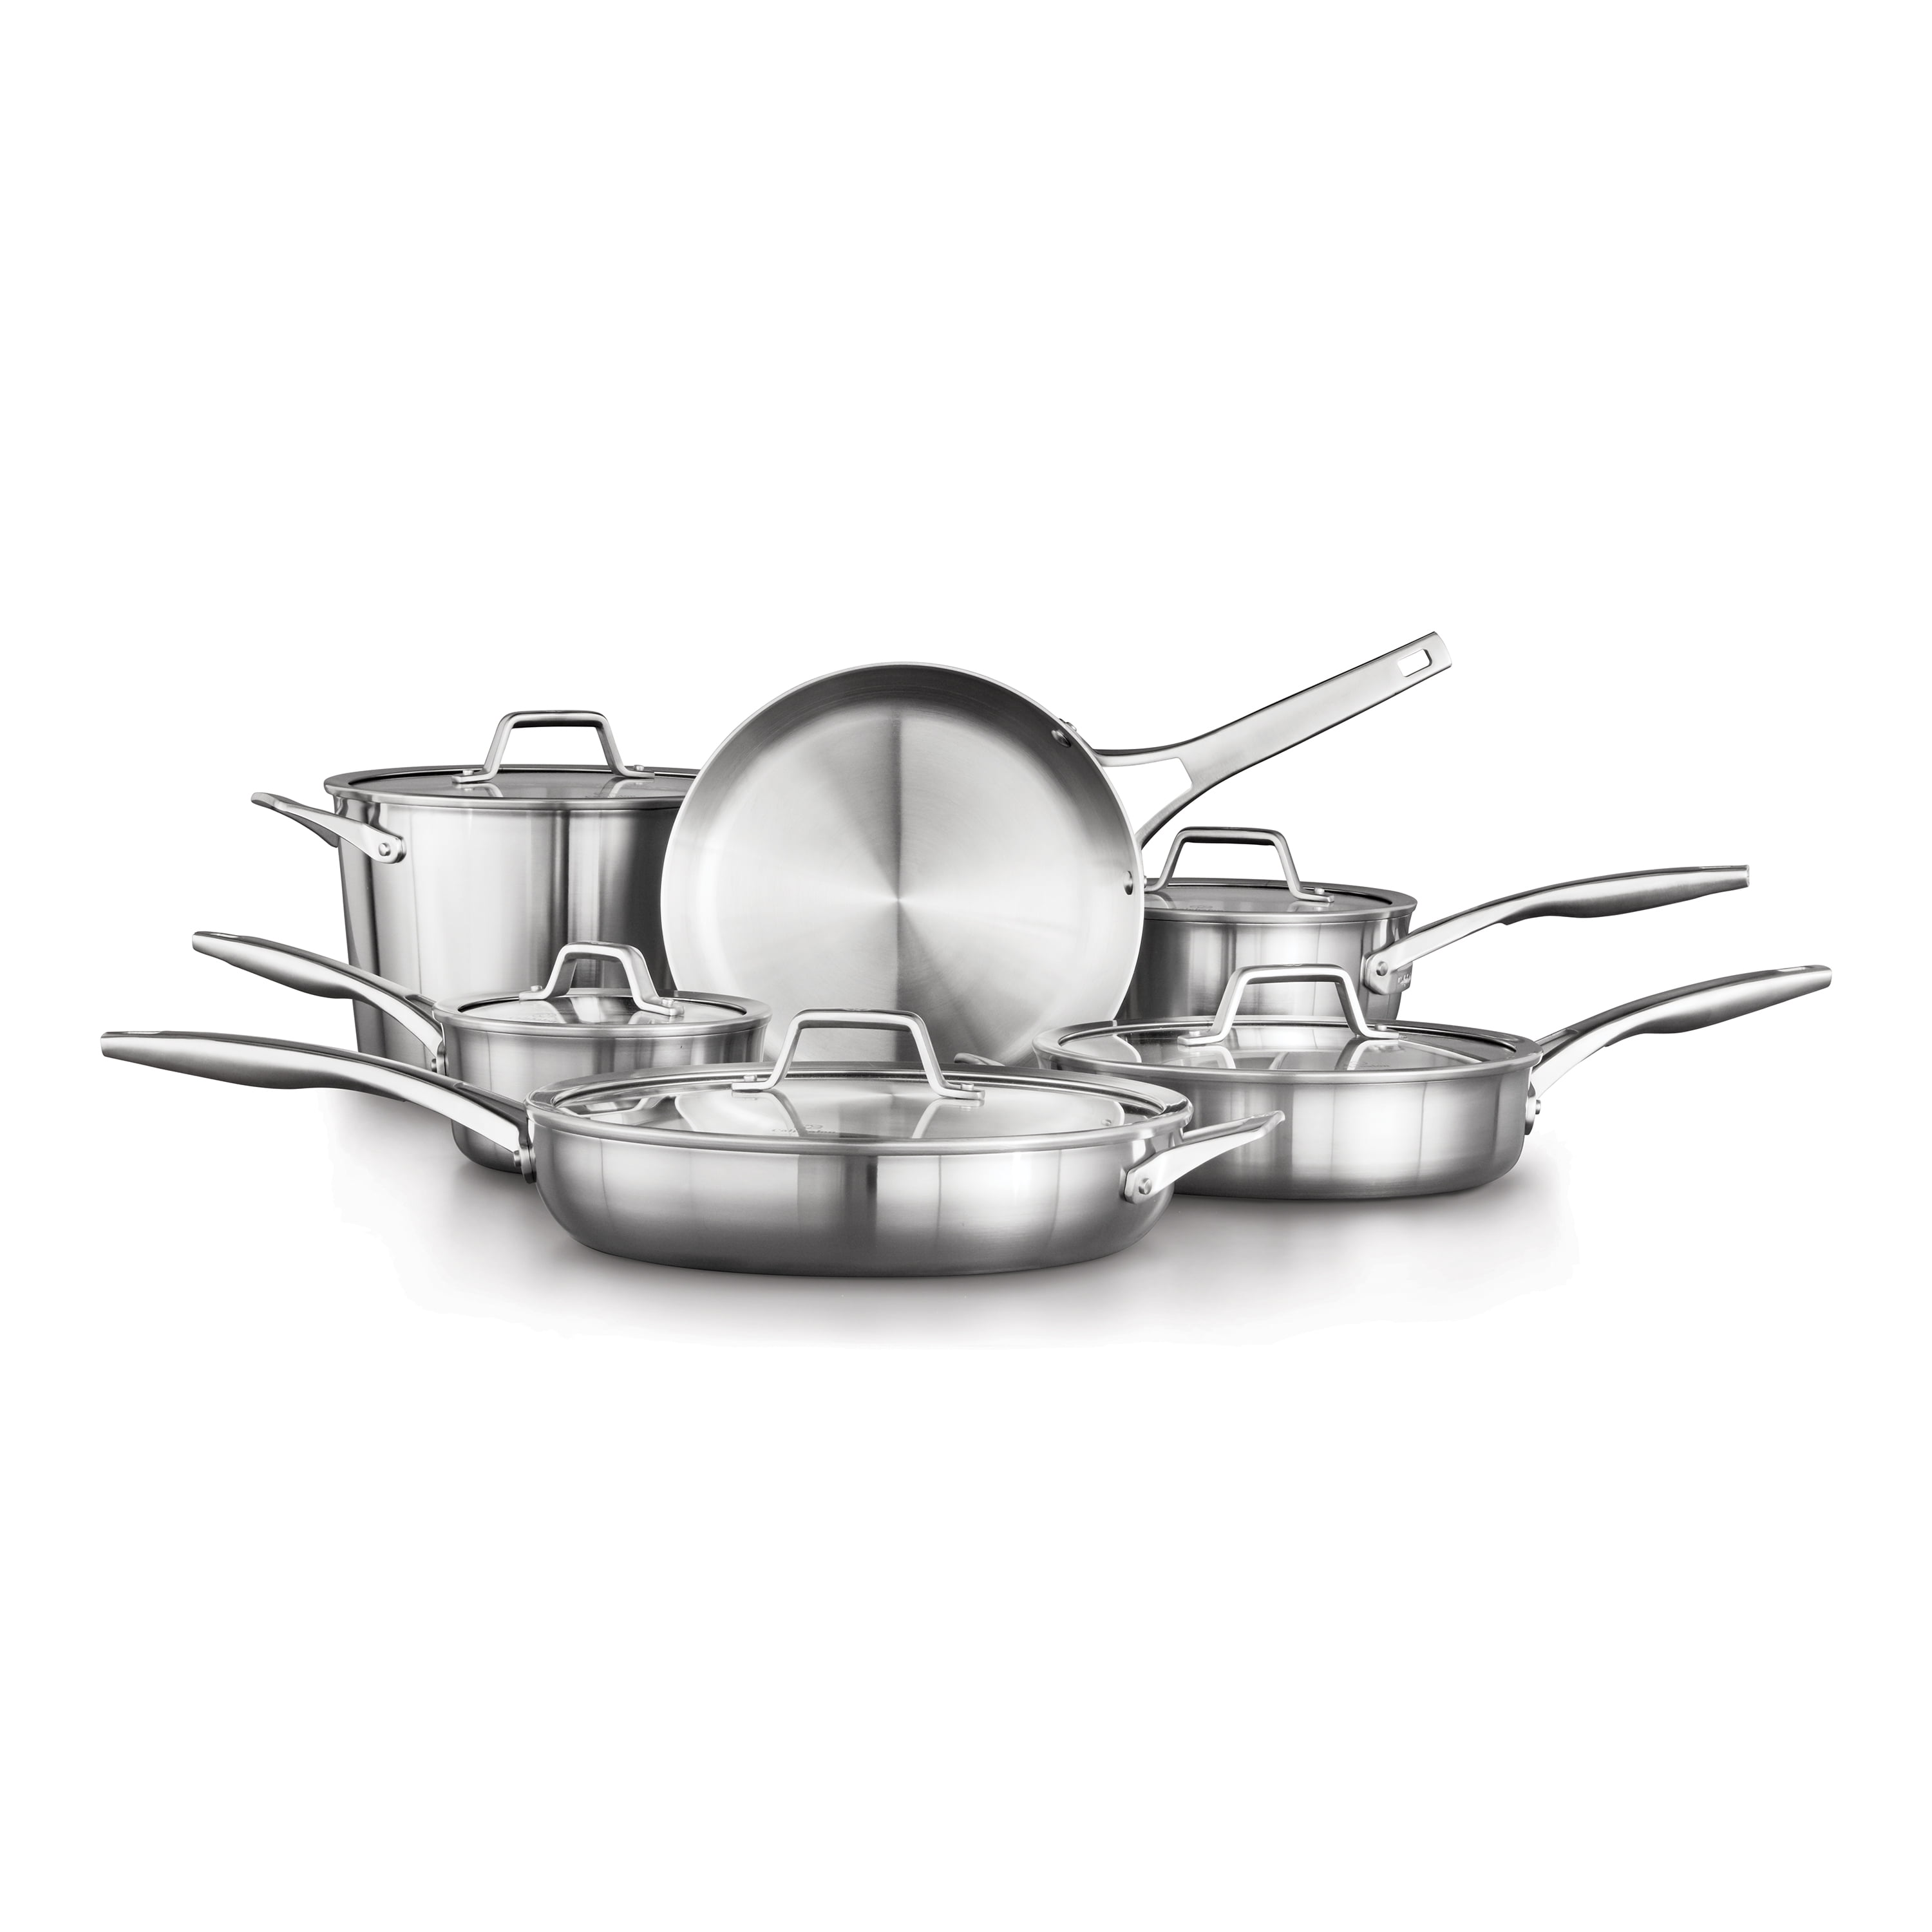 Calphalon Premier Stainless Steel 11-piece Cookware Set